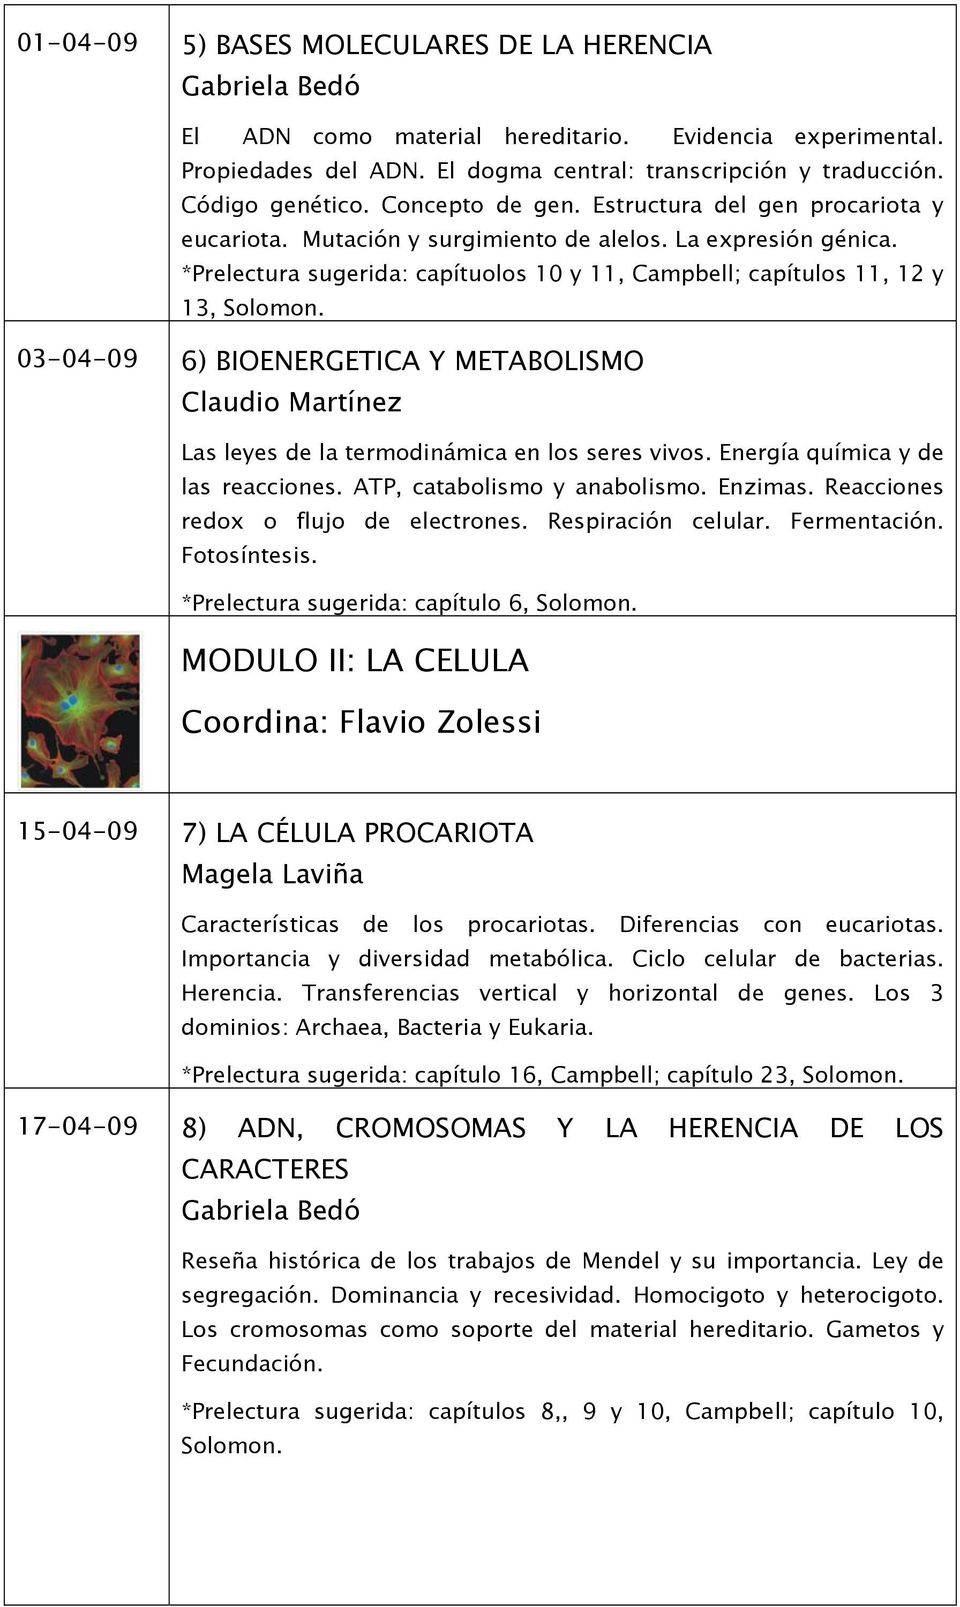 03-04-09 6) BIOENERGETICA Y METABOLISMO Claudio Martínez Las leyes de la termodinámica en los seres vivos. Energía química y de las reacciones. ATP, catabolismo y anabolismo. Enzimas.